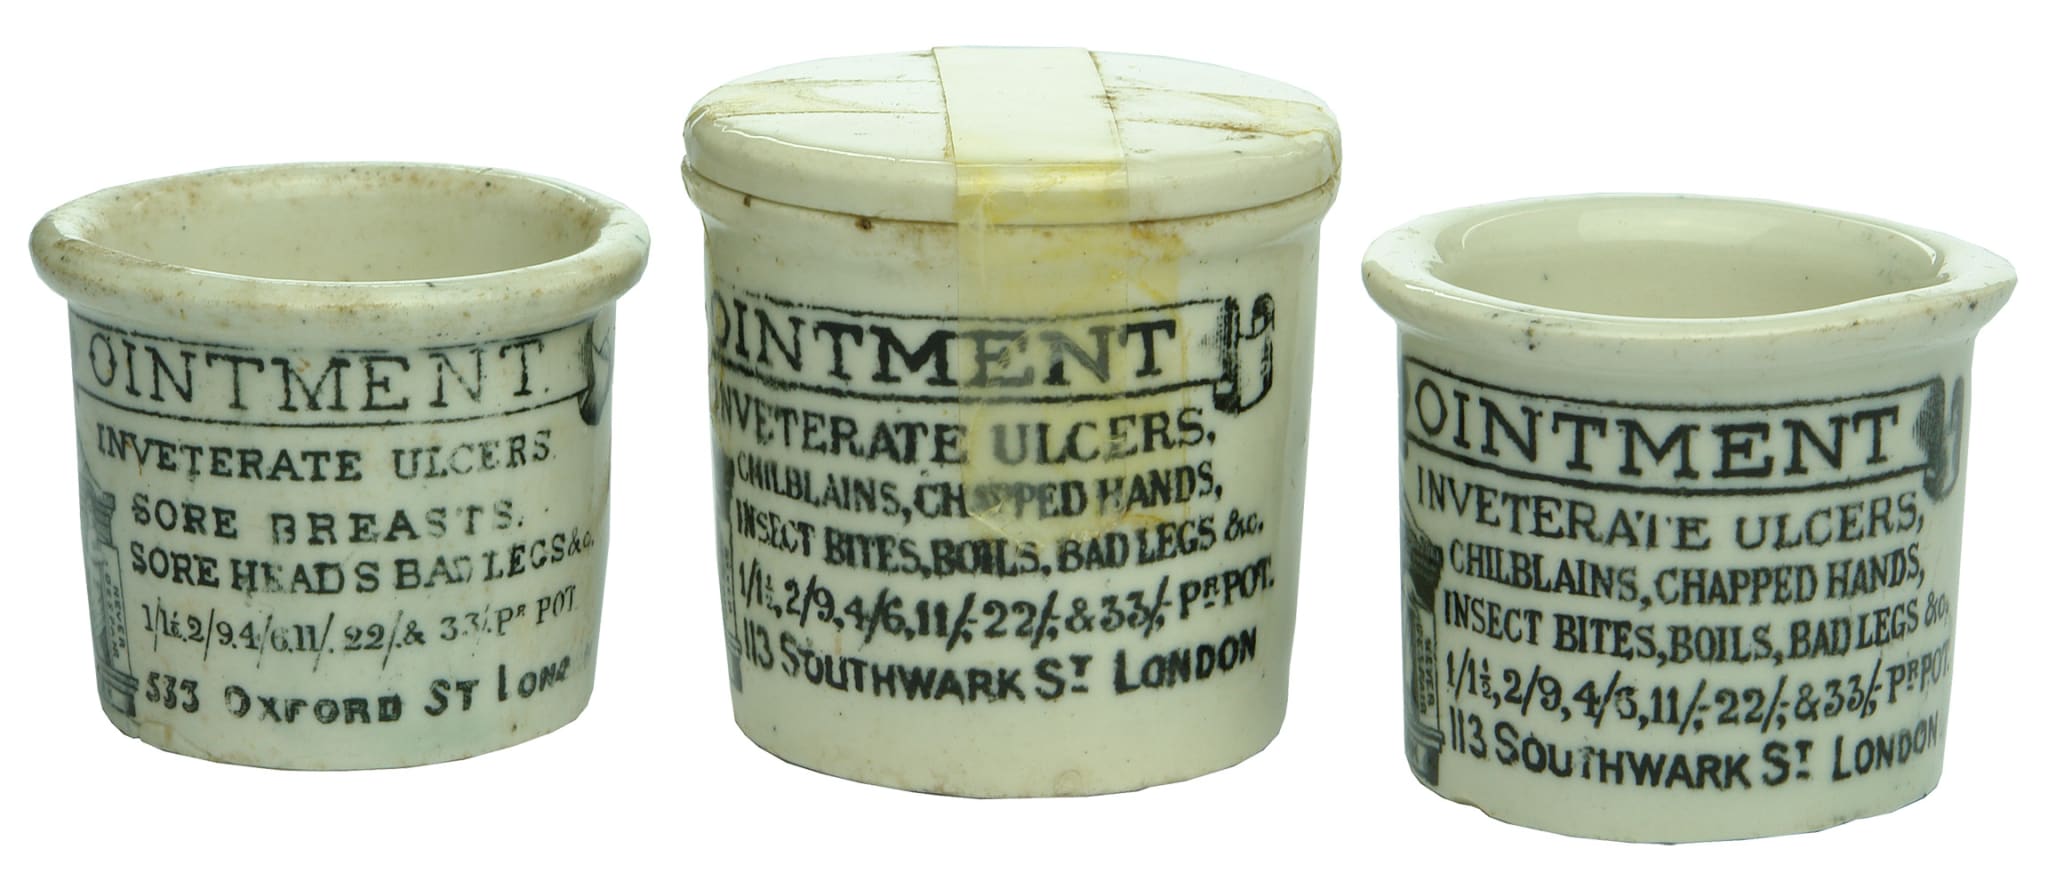 Hollways Antique Ointment Pots